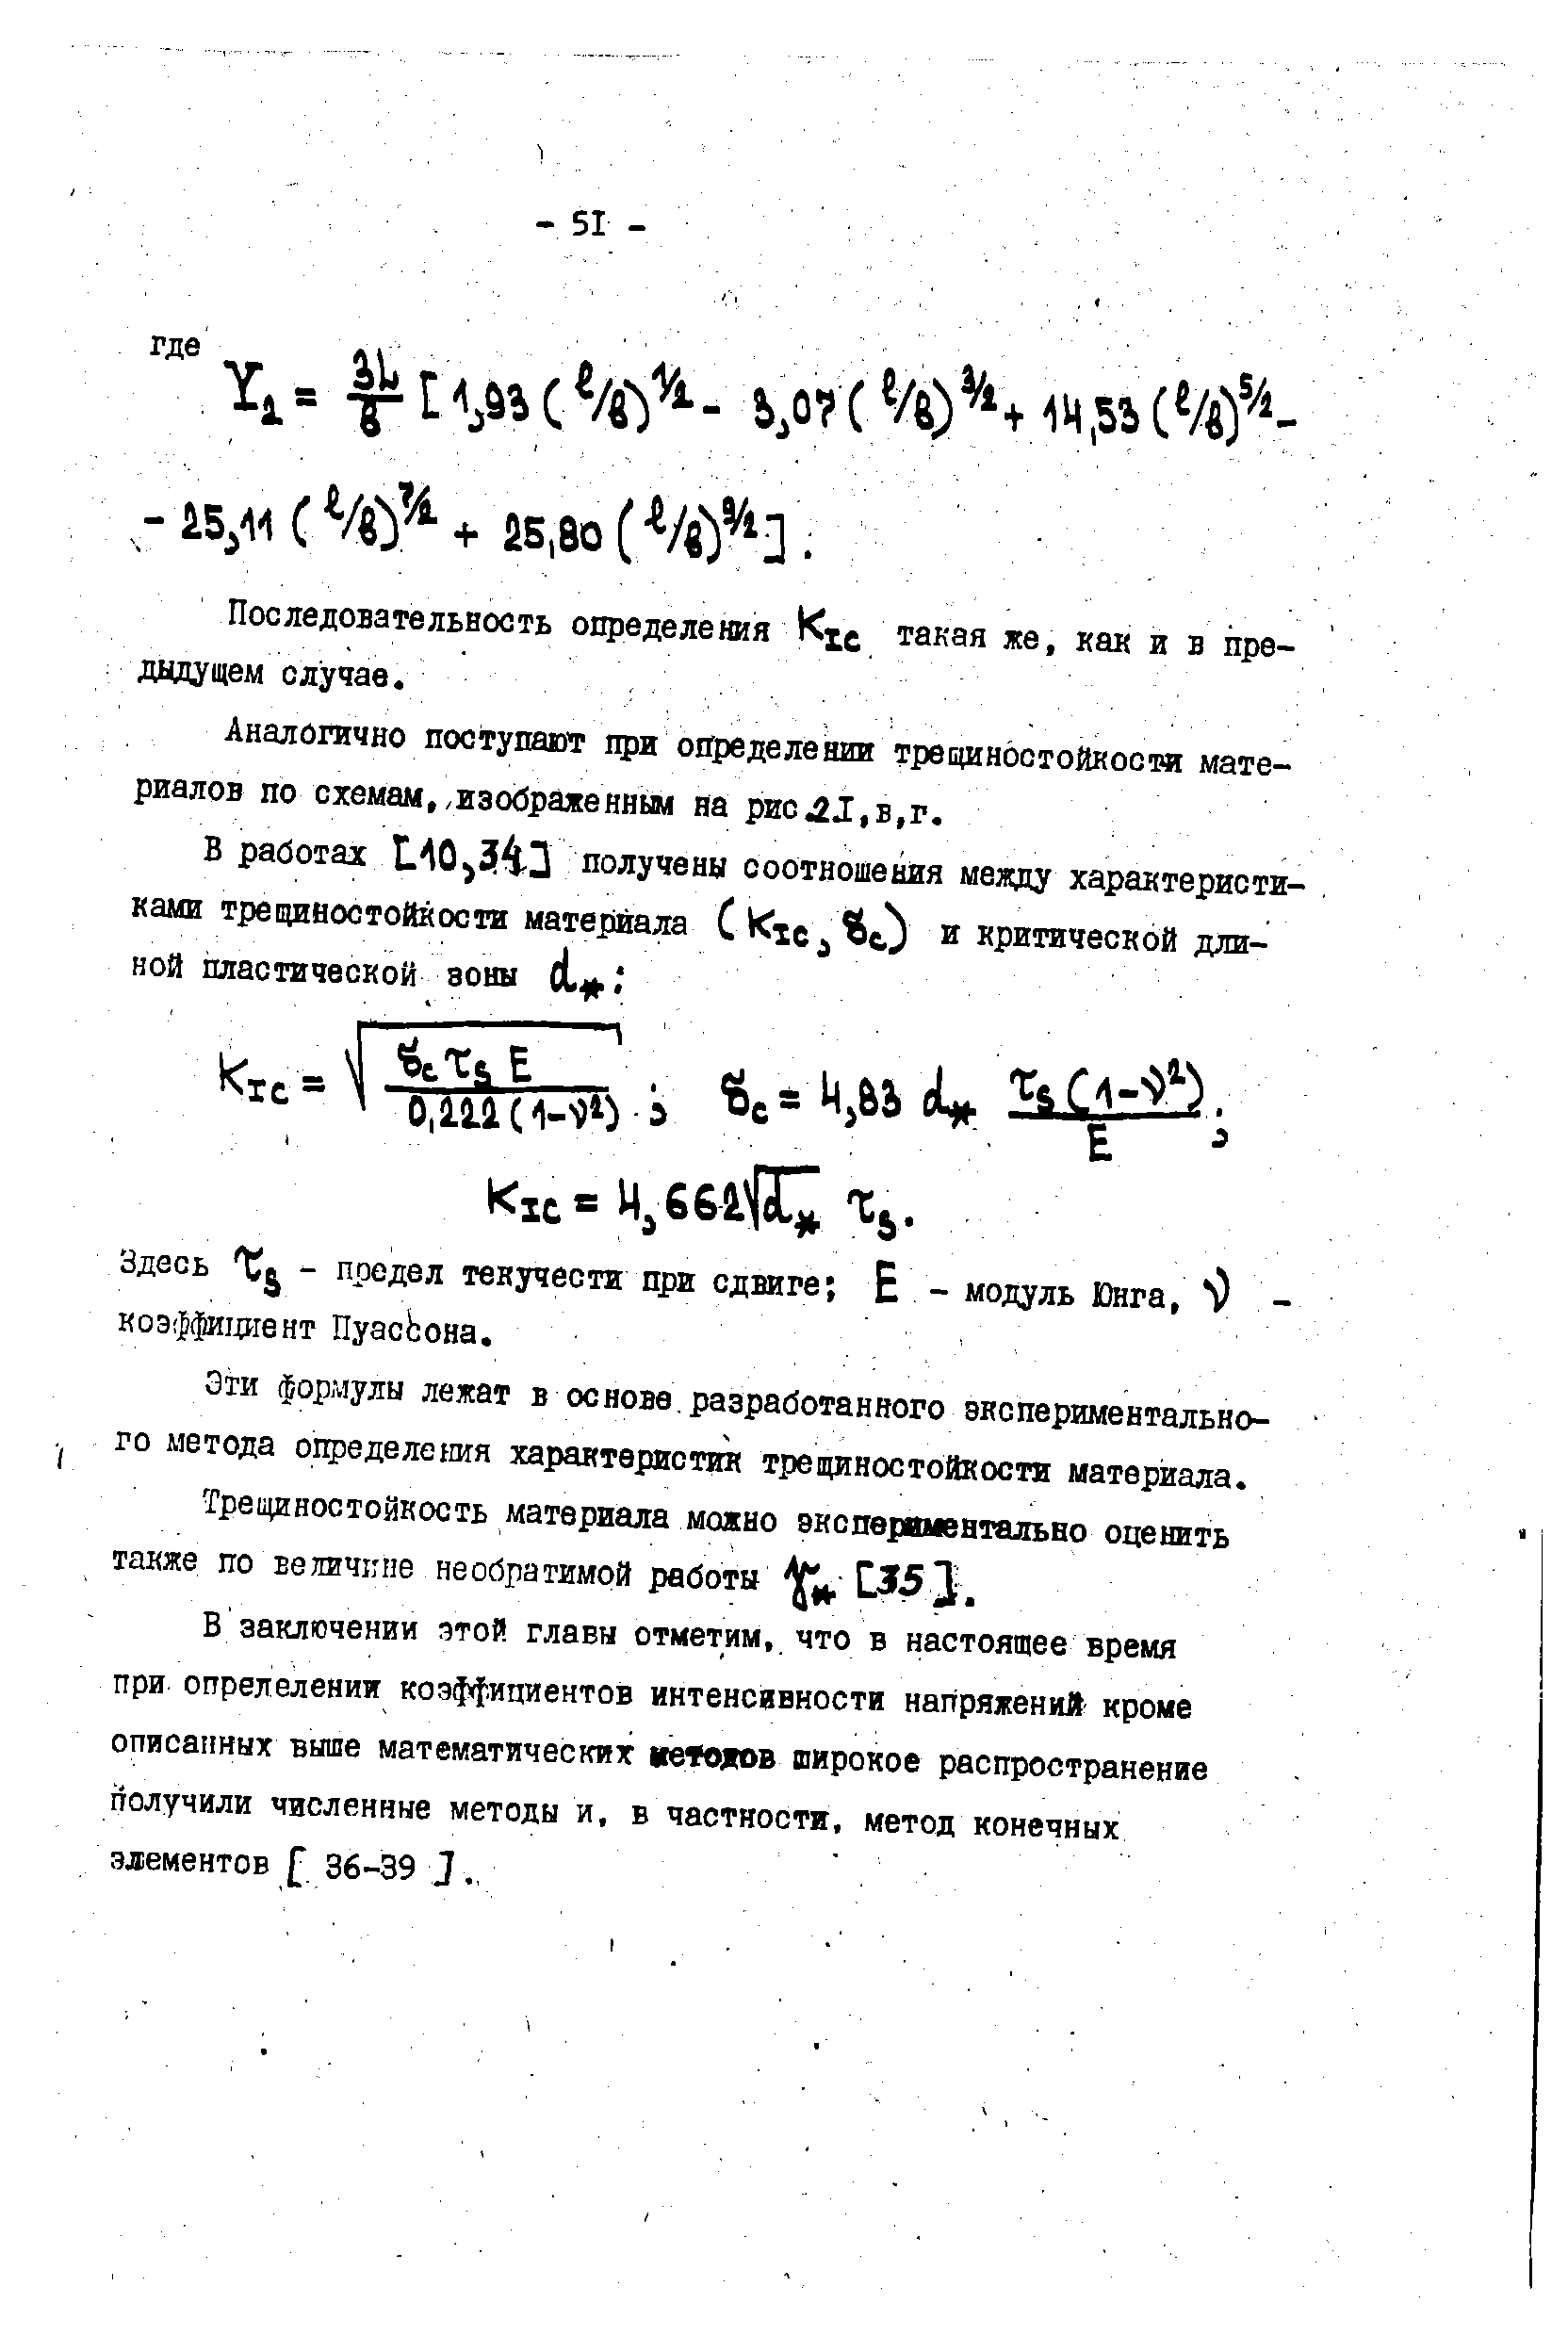 Эти формулы лежат в основе, разработанного экспериментального метода определения характеристик трещиностойкости материала.
